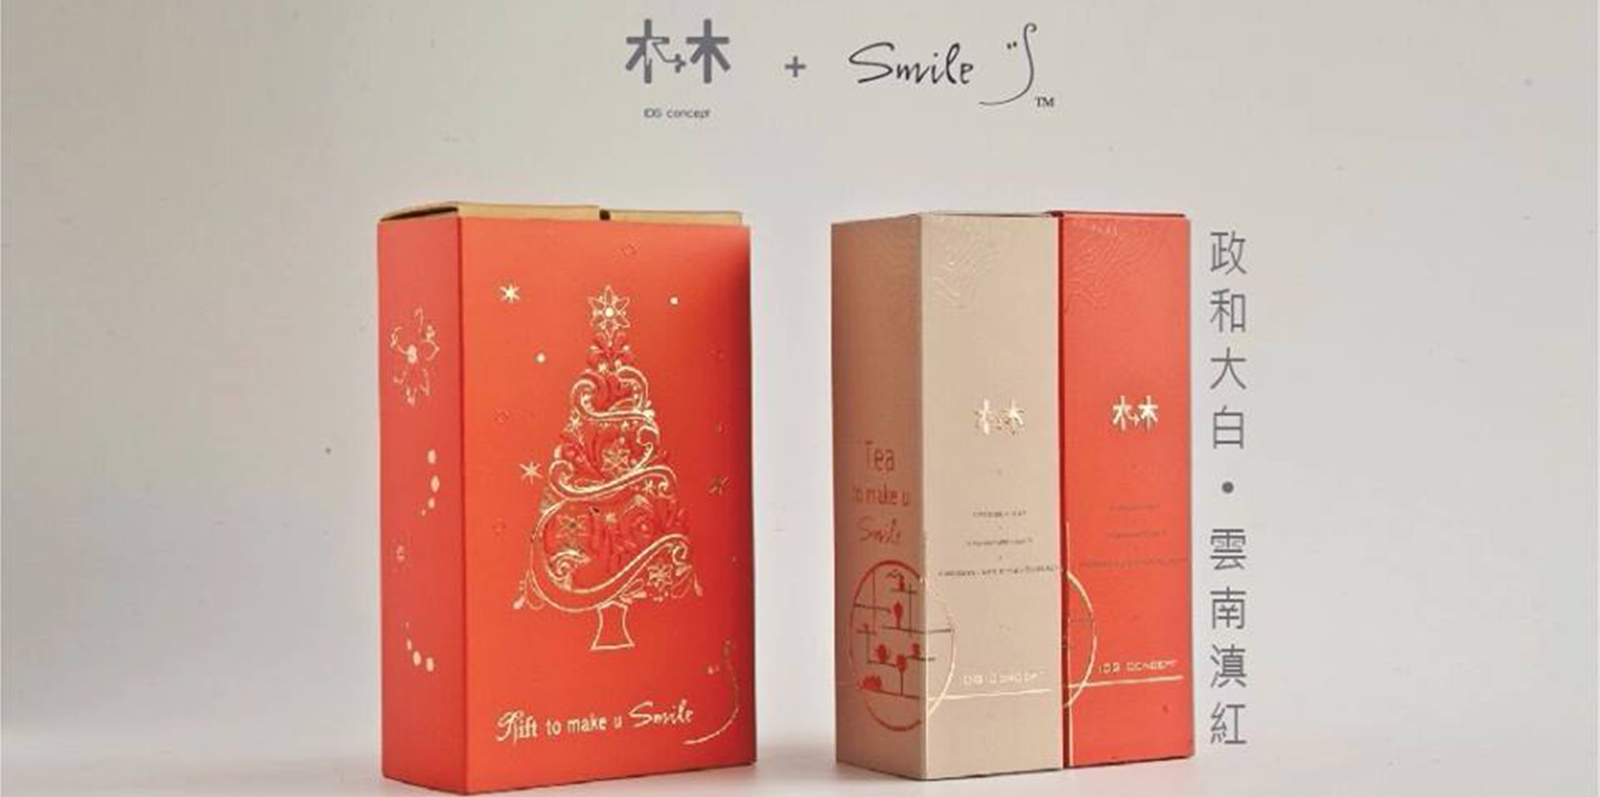 中國茶+美味曲奇 - IDG Concept + SMILE Yogurt為你泡制一系列窩心聖誕及新年禮物，現可在 Smile店親身選購。